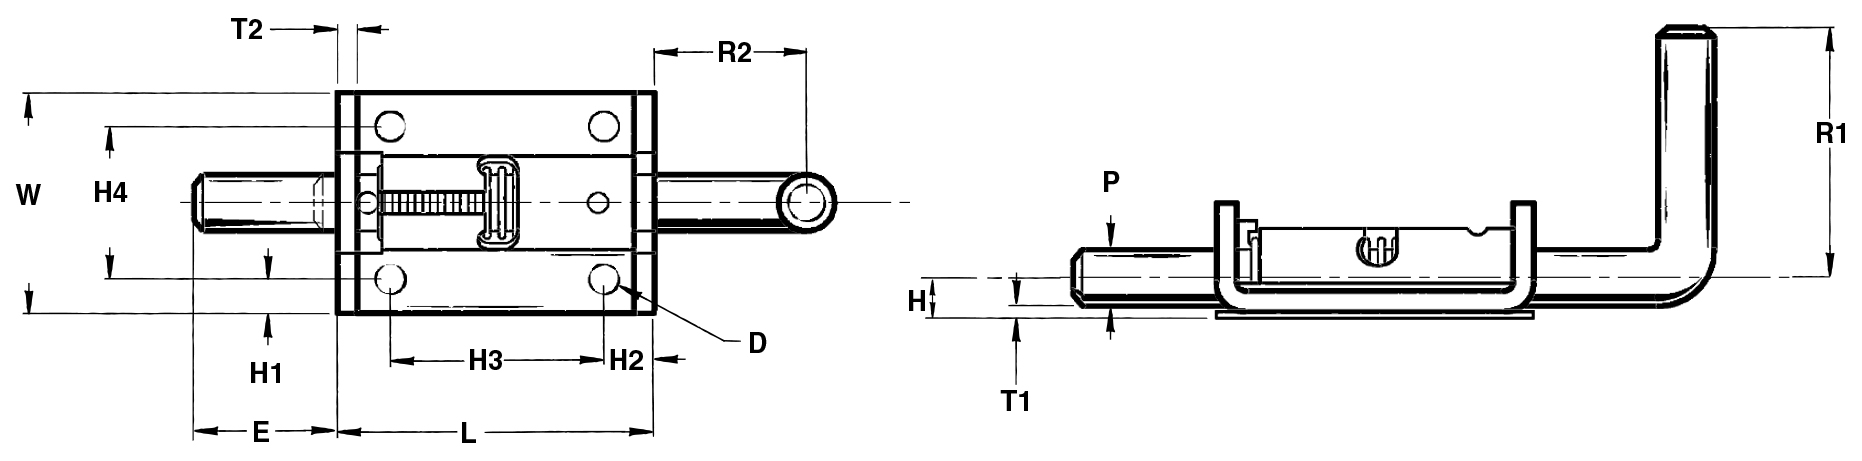 Series-779-diagram